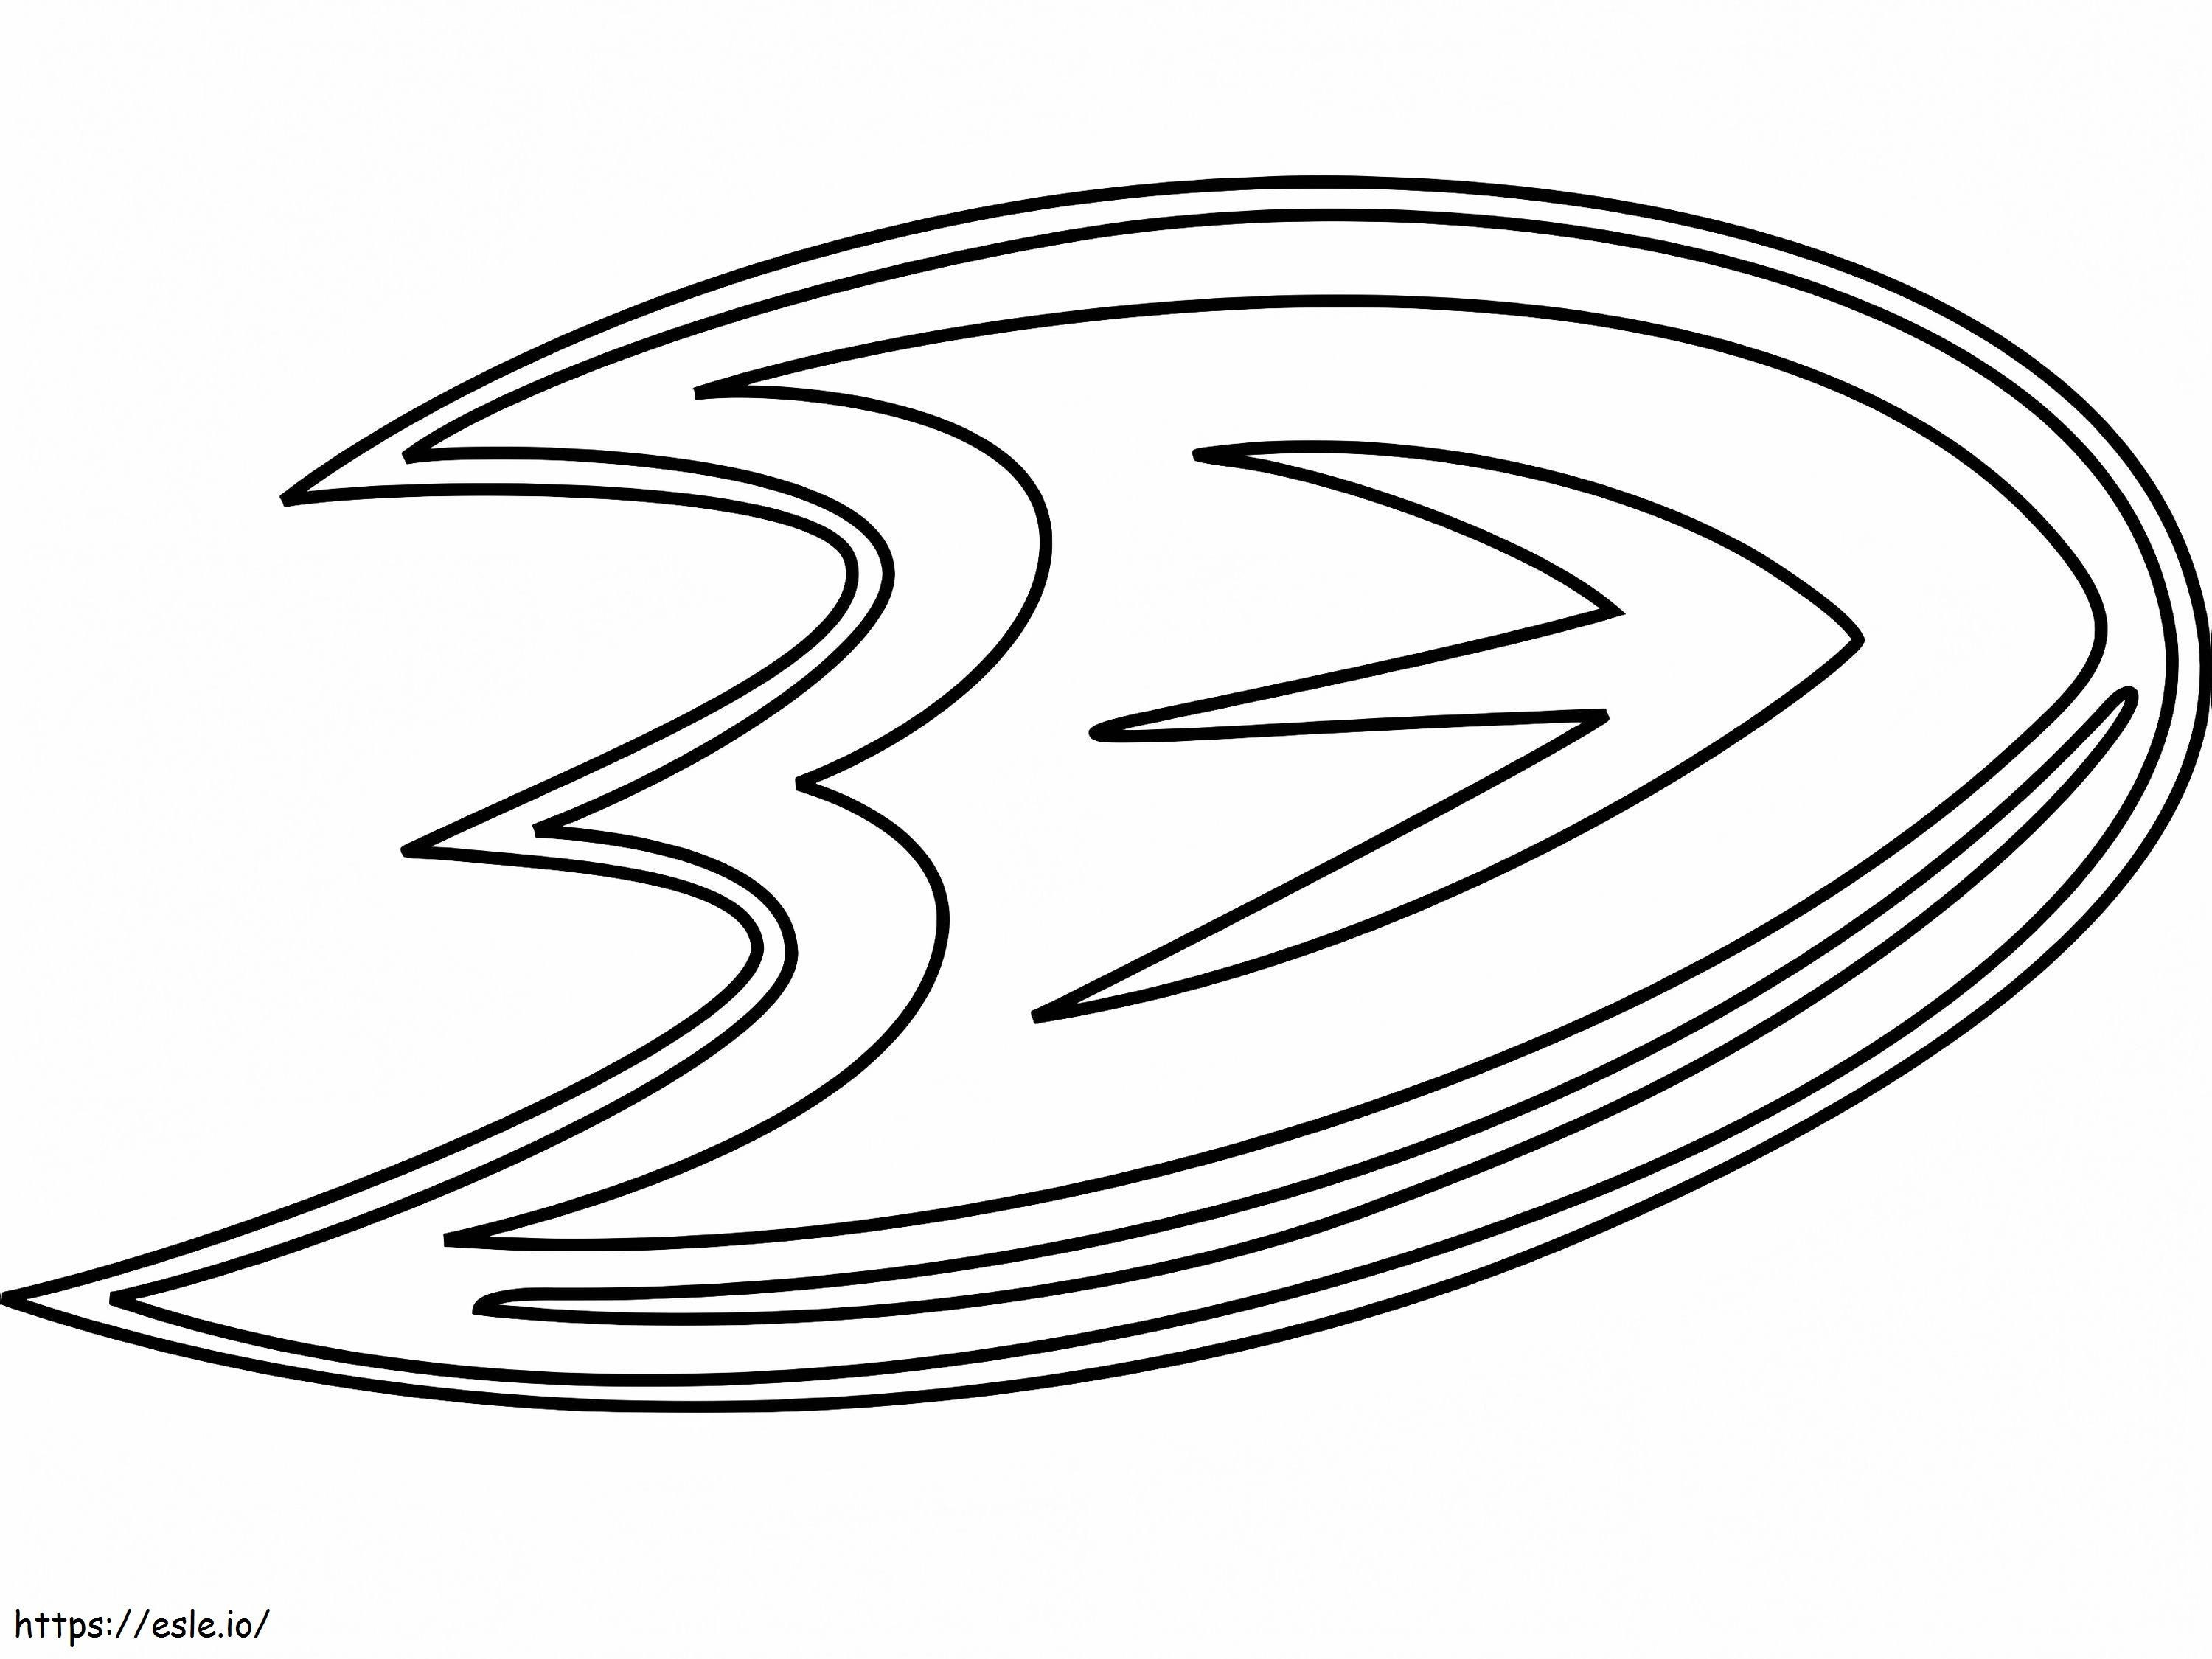 Logo degli Anaheim Ducks da colorare